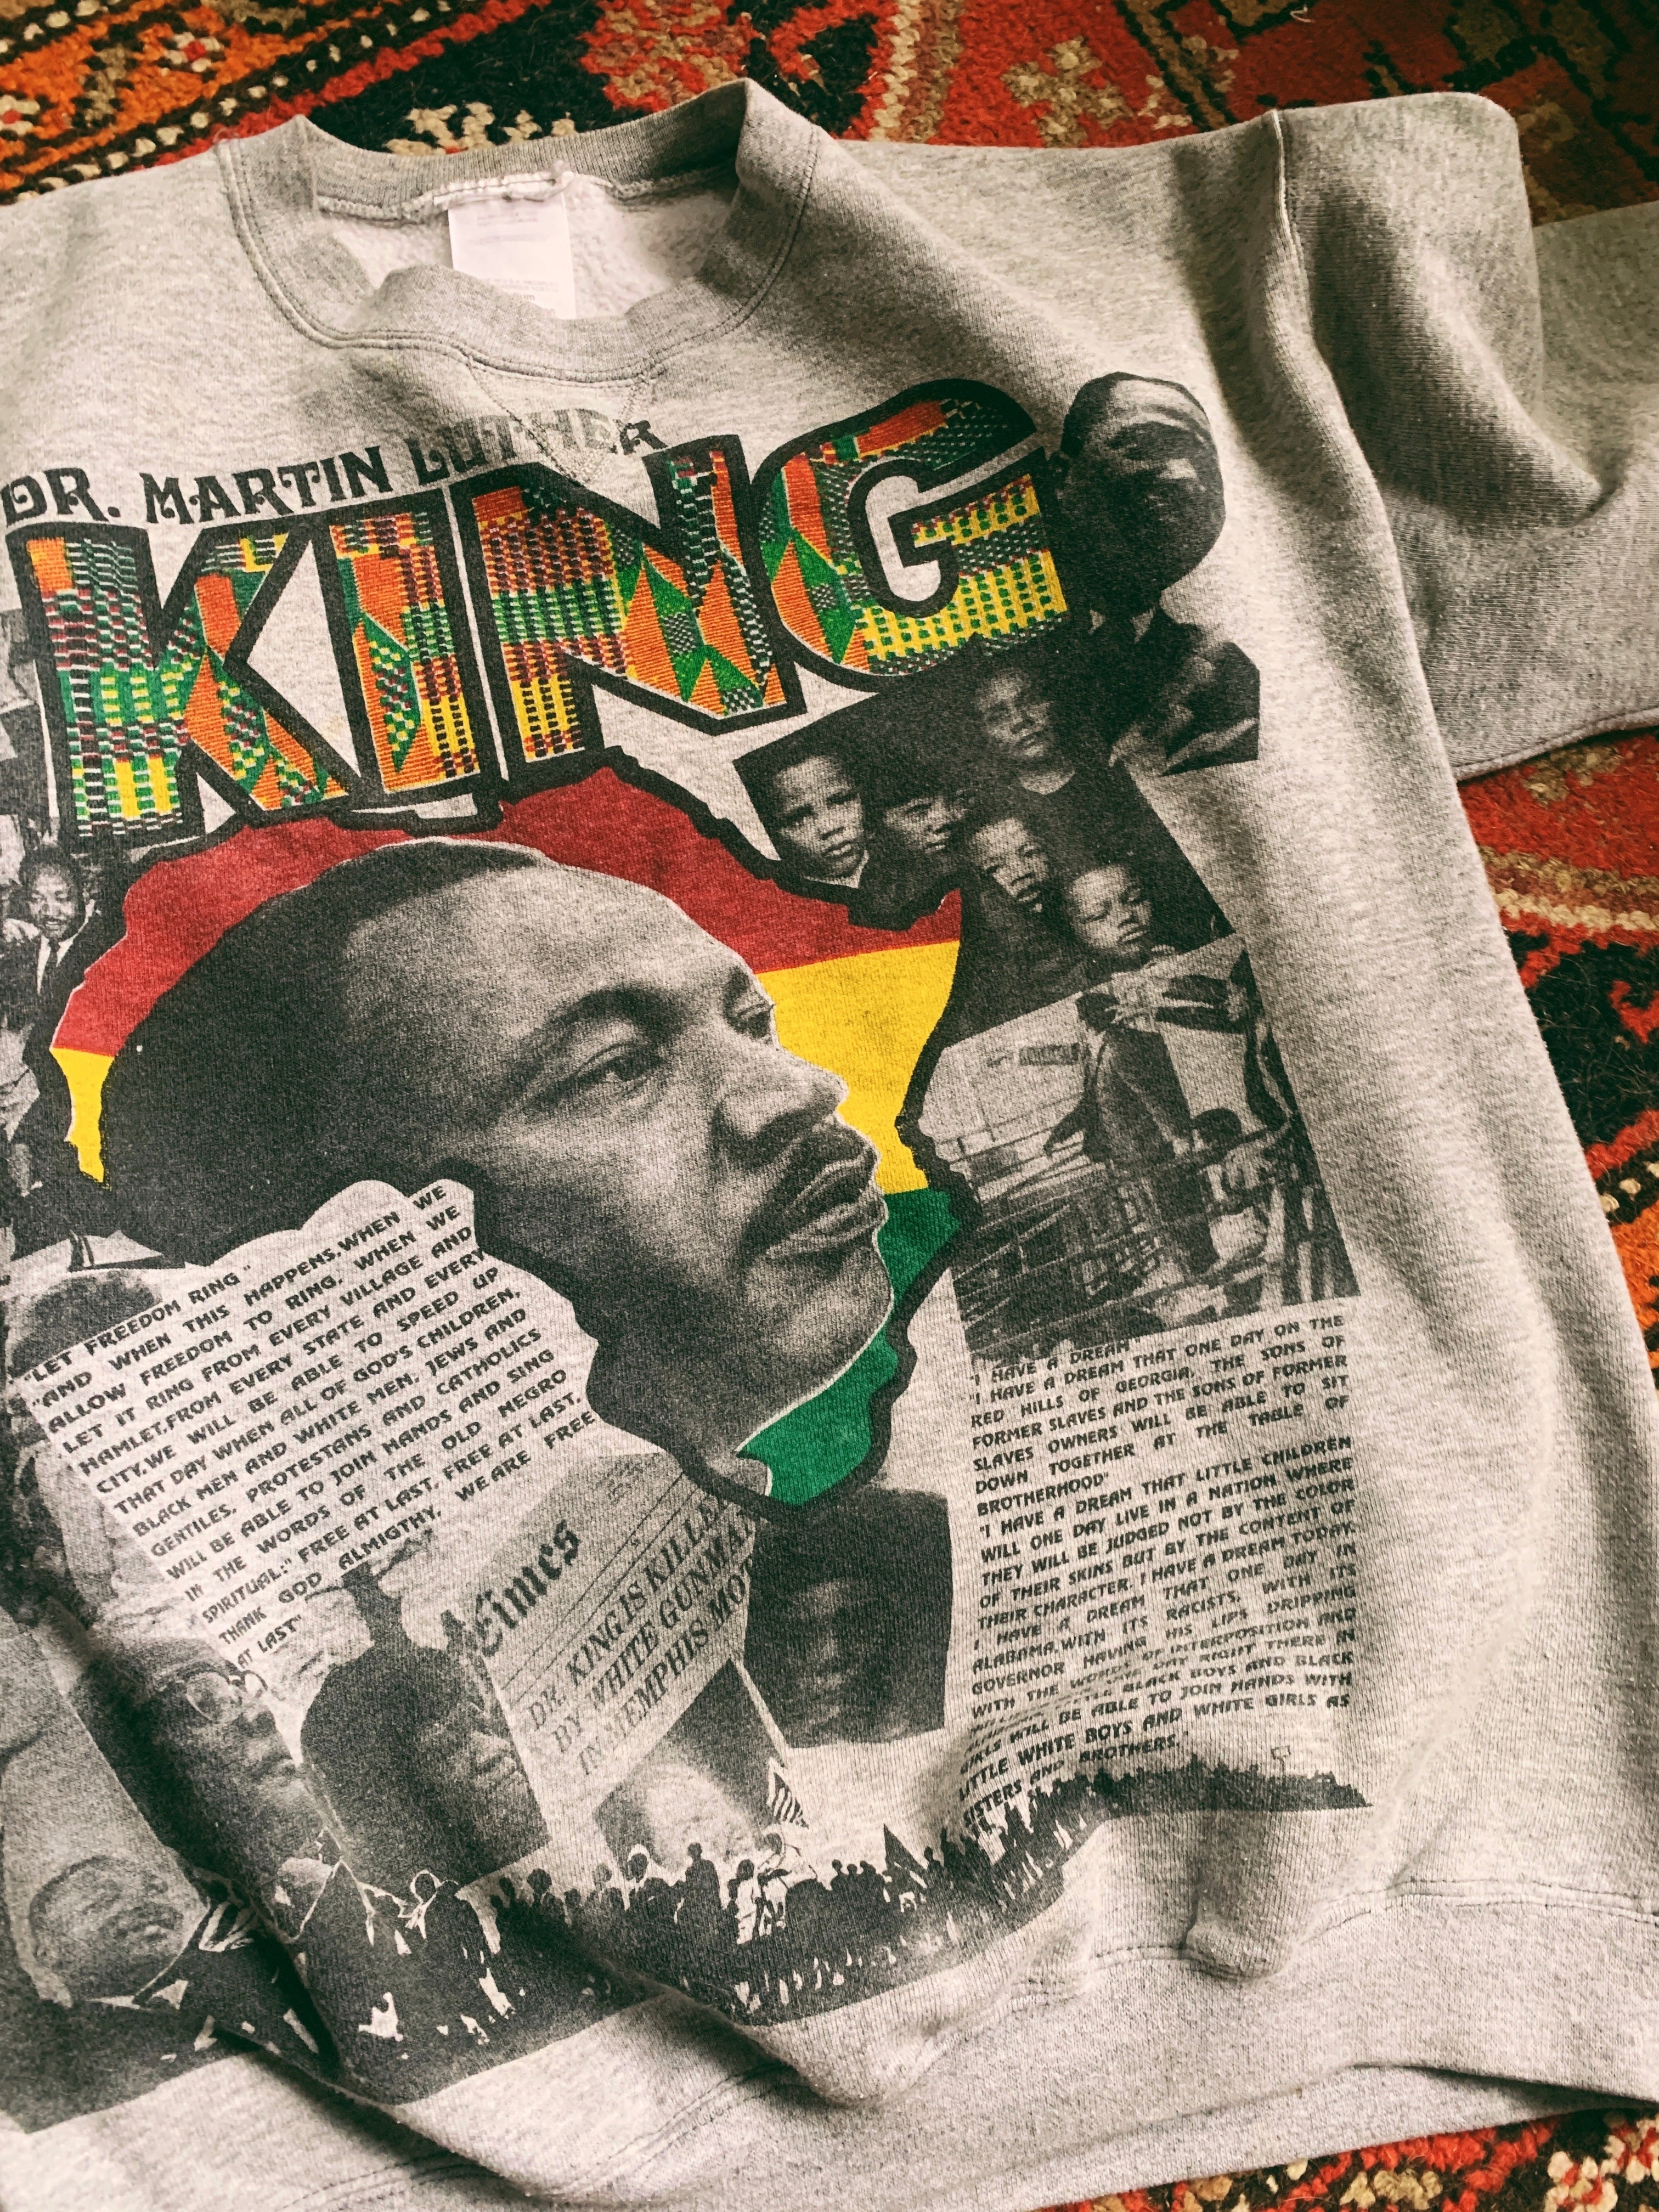 Vintage Dr. Martin Luther King Jr. Sweatshirt (1990’s)